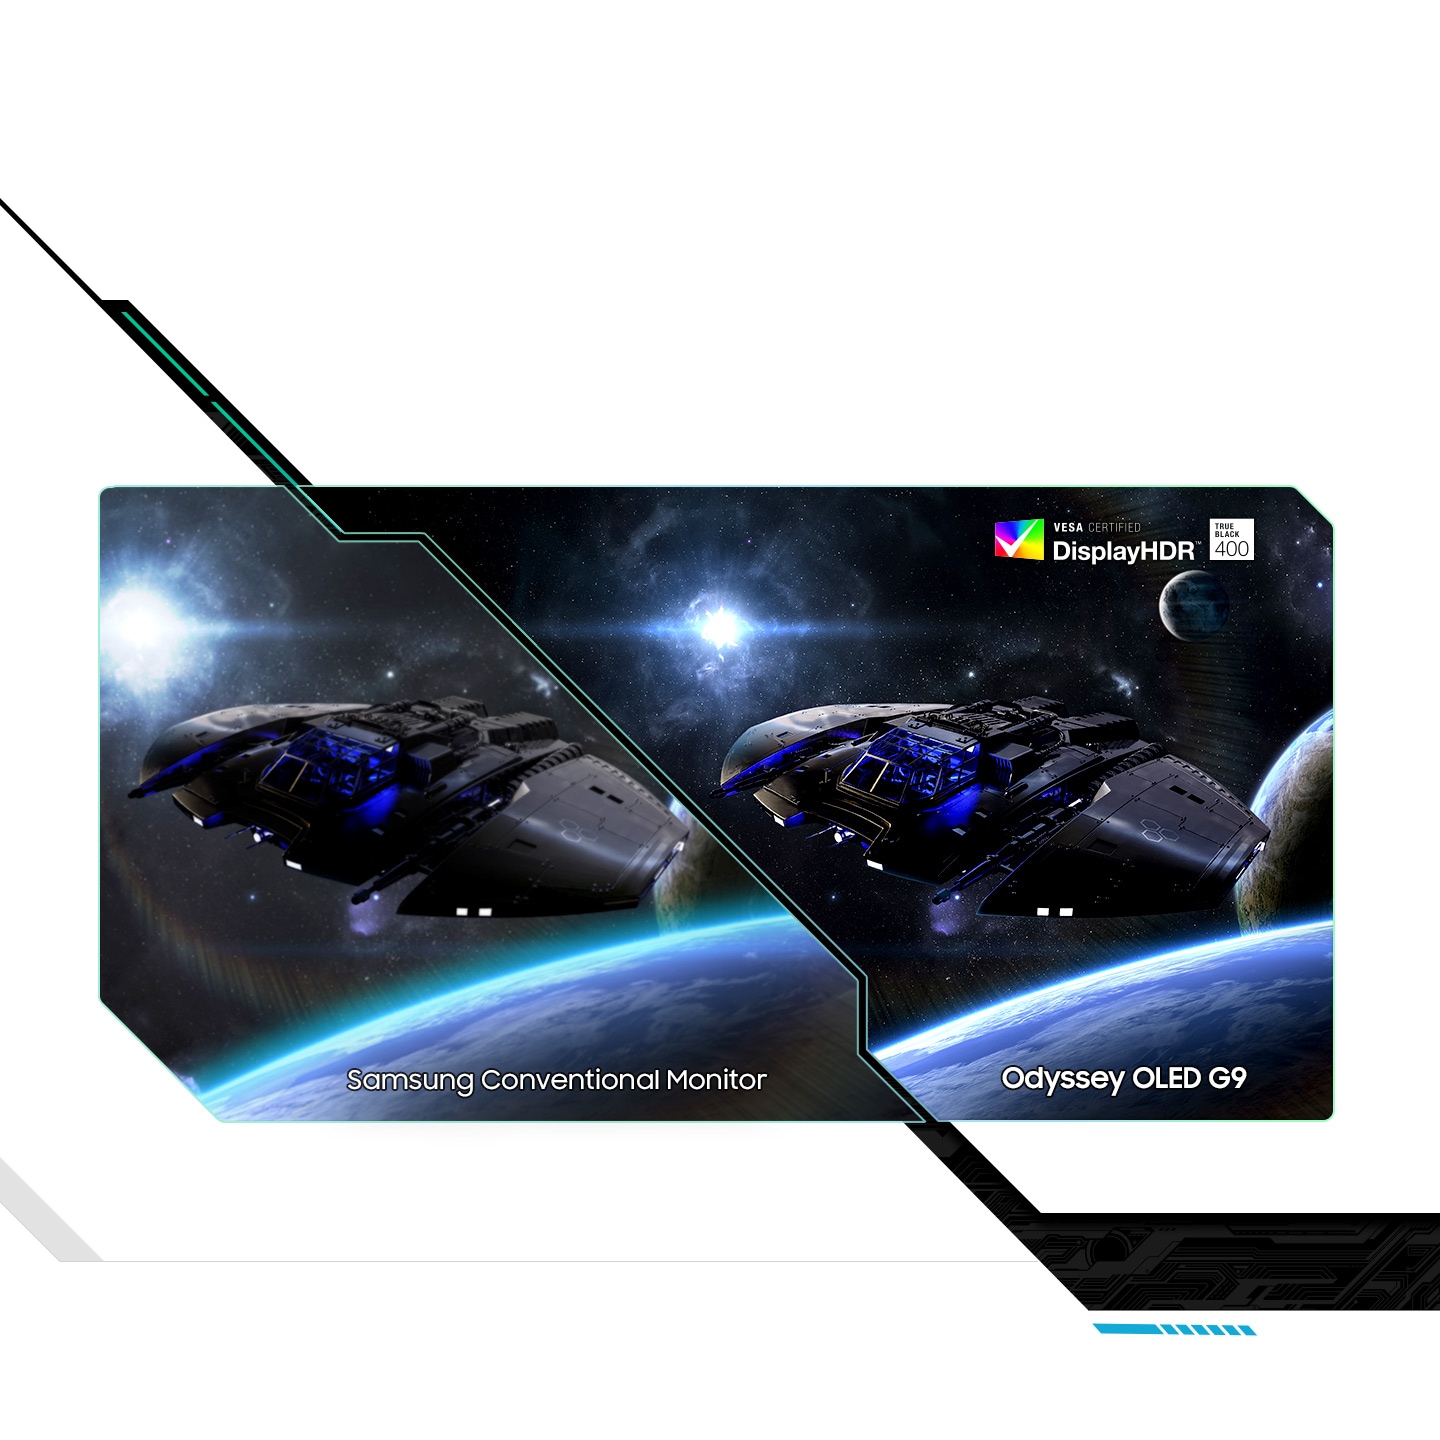 Một màn hình chia nhỏ và hiển thị cùng một con tàu vũ trụ đang bay khỏi một hành tinh, mặt trăng và một ngôi sao. Ở bên trái có dòng chữ “Màn hình thông thường của Samsung” và ở bên phải là “Odyssey OLED G9”. Dòng chữ ở bên phải có nội dung “Màn hình được chứng nhận VESA HDR True Black 400”. Phía bên phải hiển thị màu đen sâu hơn và màu trắng sáng hơn với các chi tiết.